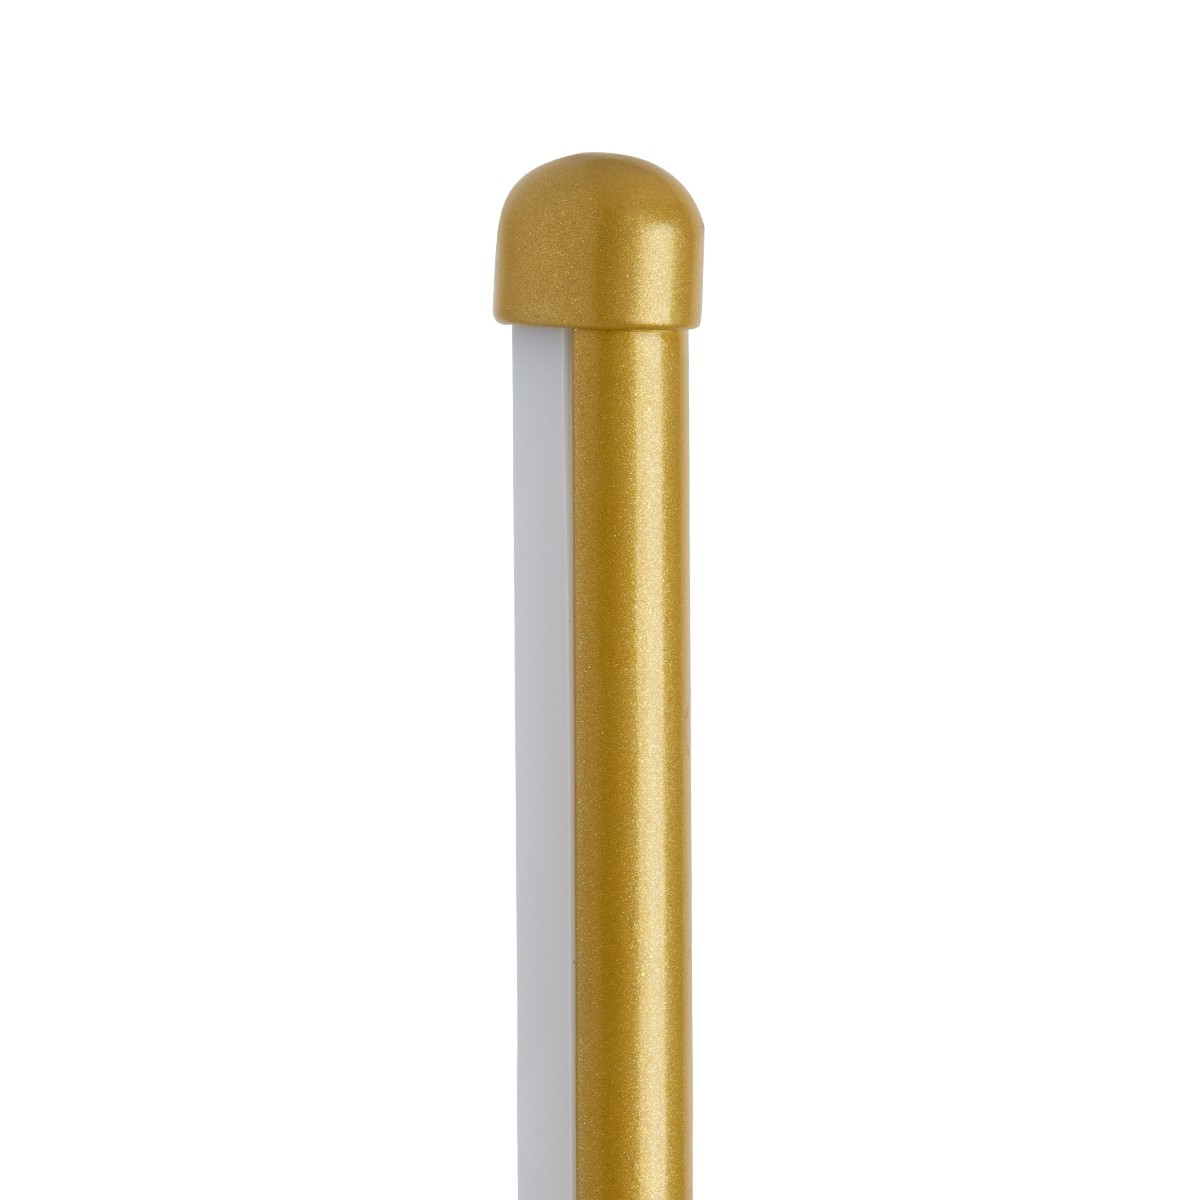 Led Γραμμικό Φωτιστικό Τοίχου - Απλίκα HARLEM 18Watt Χρυσό με Εναλλαγή Φωτισμού Μ5 x Π4 x Υ120cm 61336